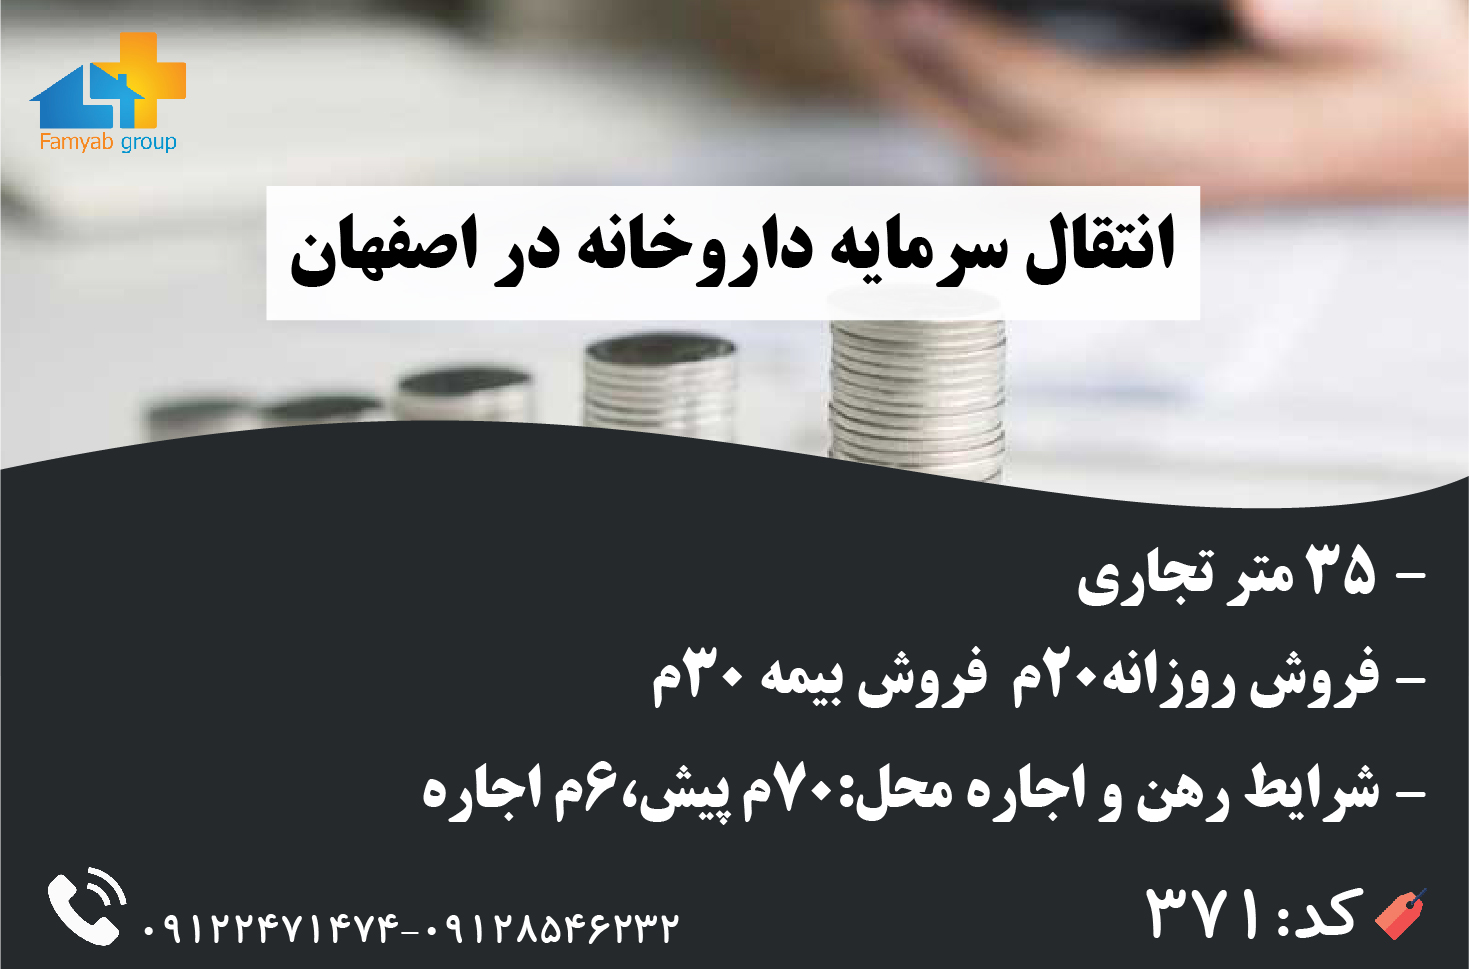 انتقال سرمایه داروخانه در شهر اصفهان